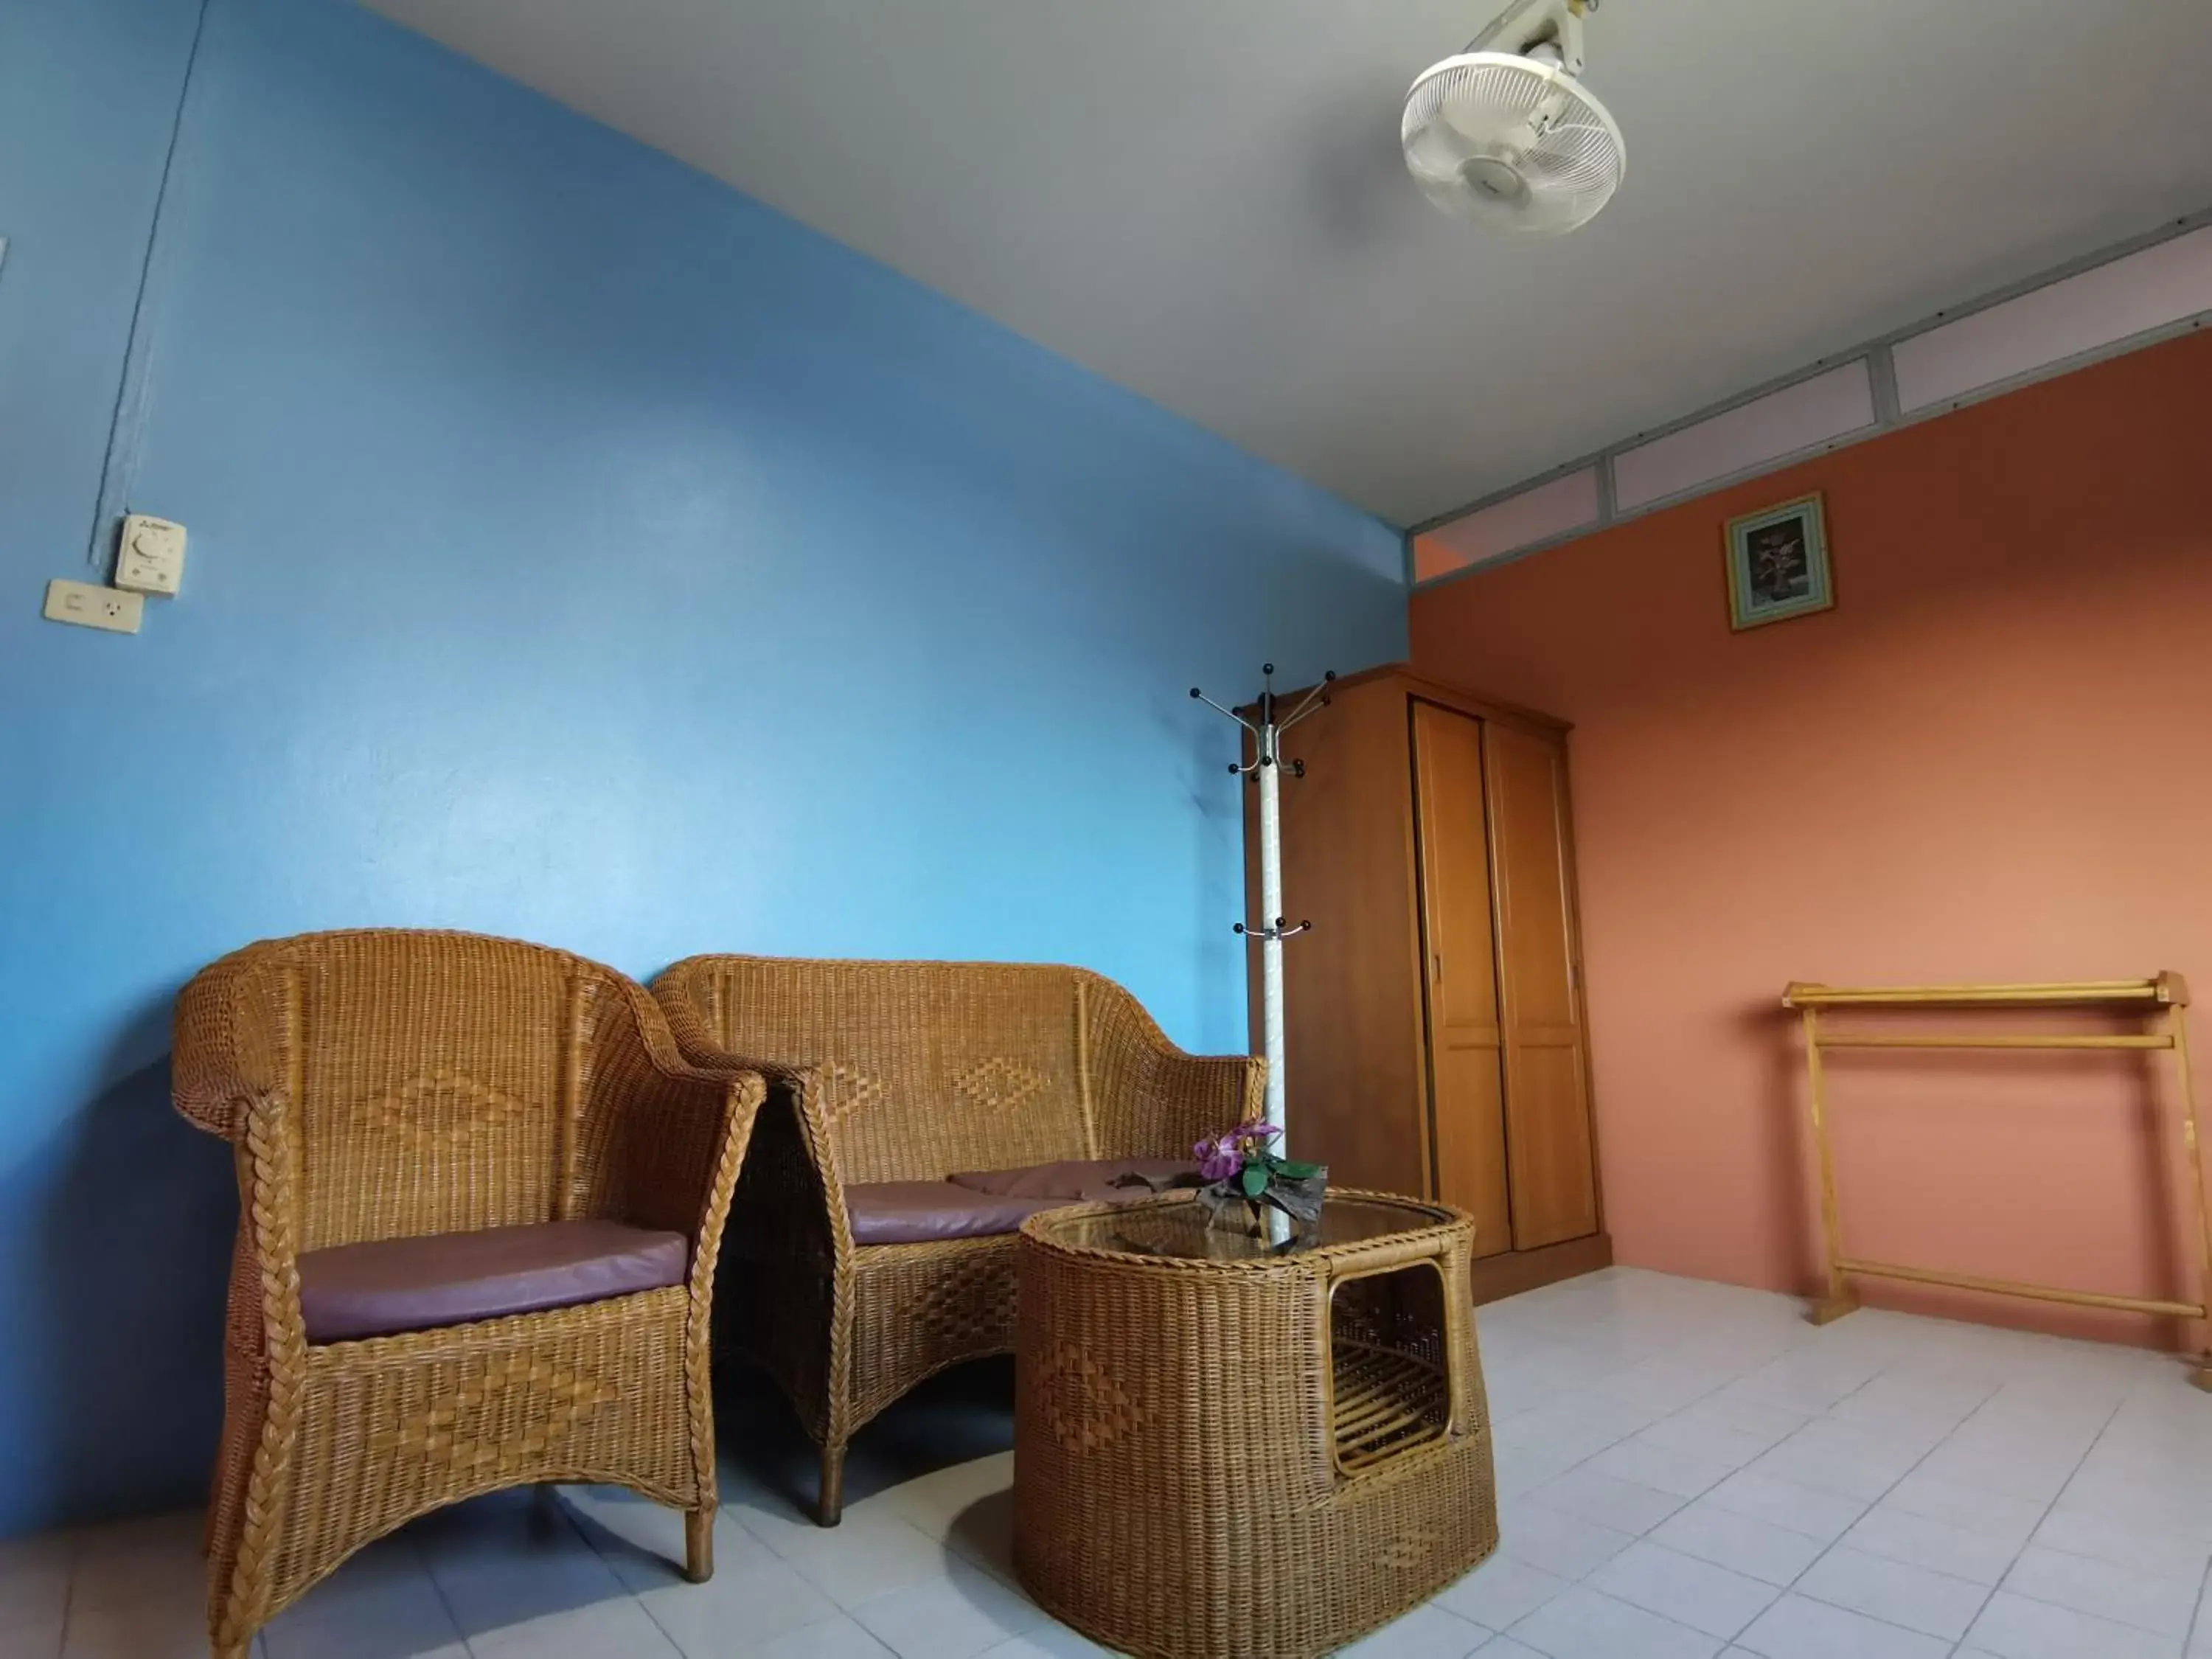 Seating Area in Samran Residence